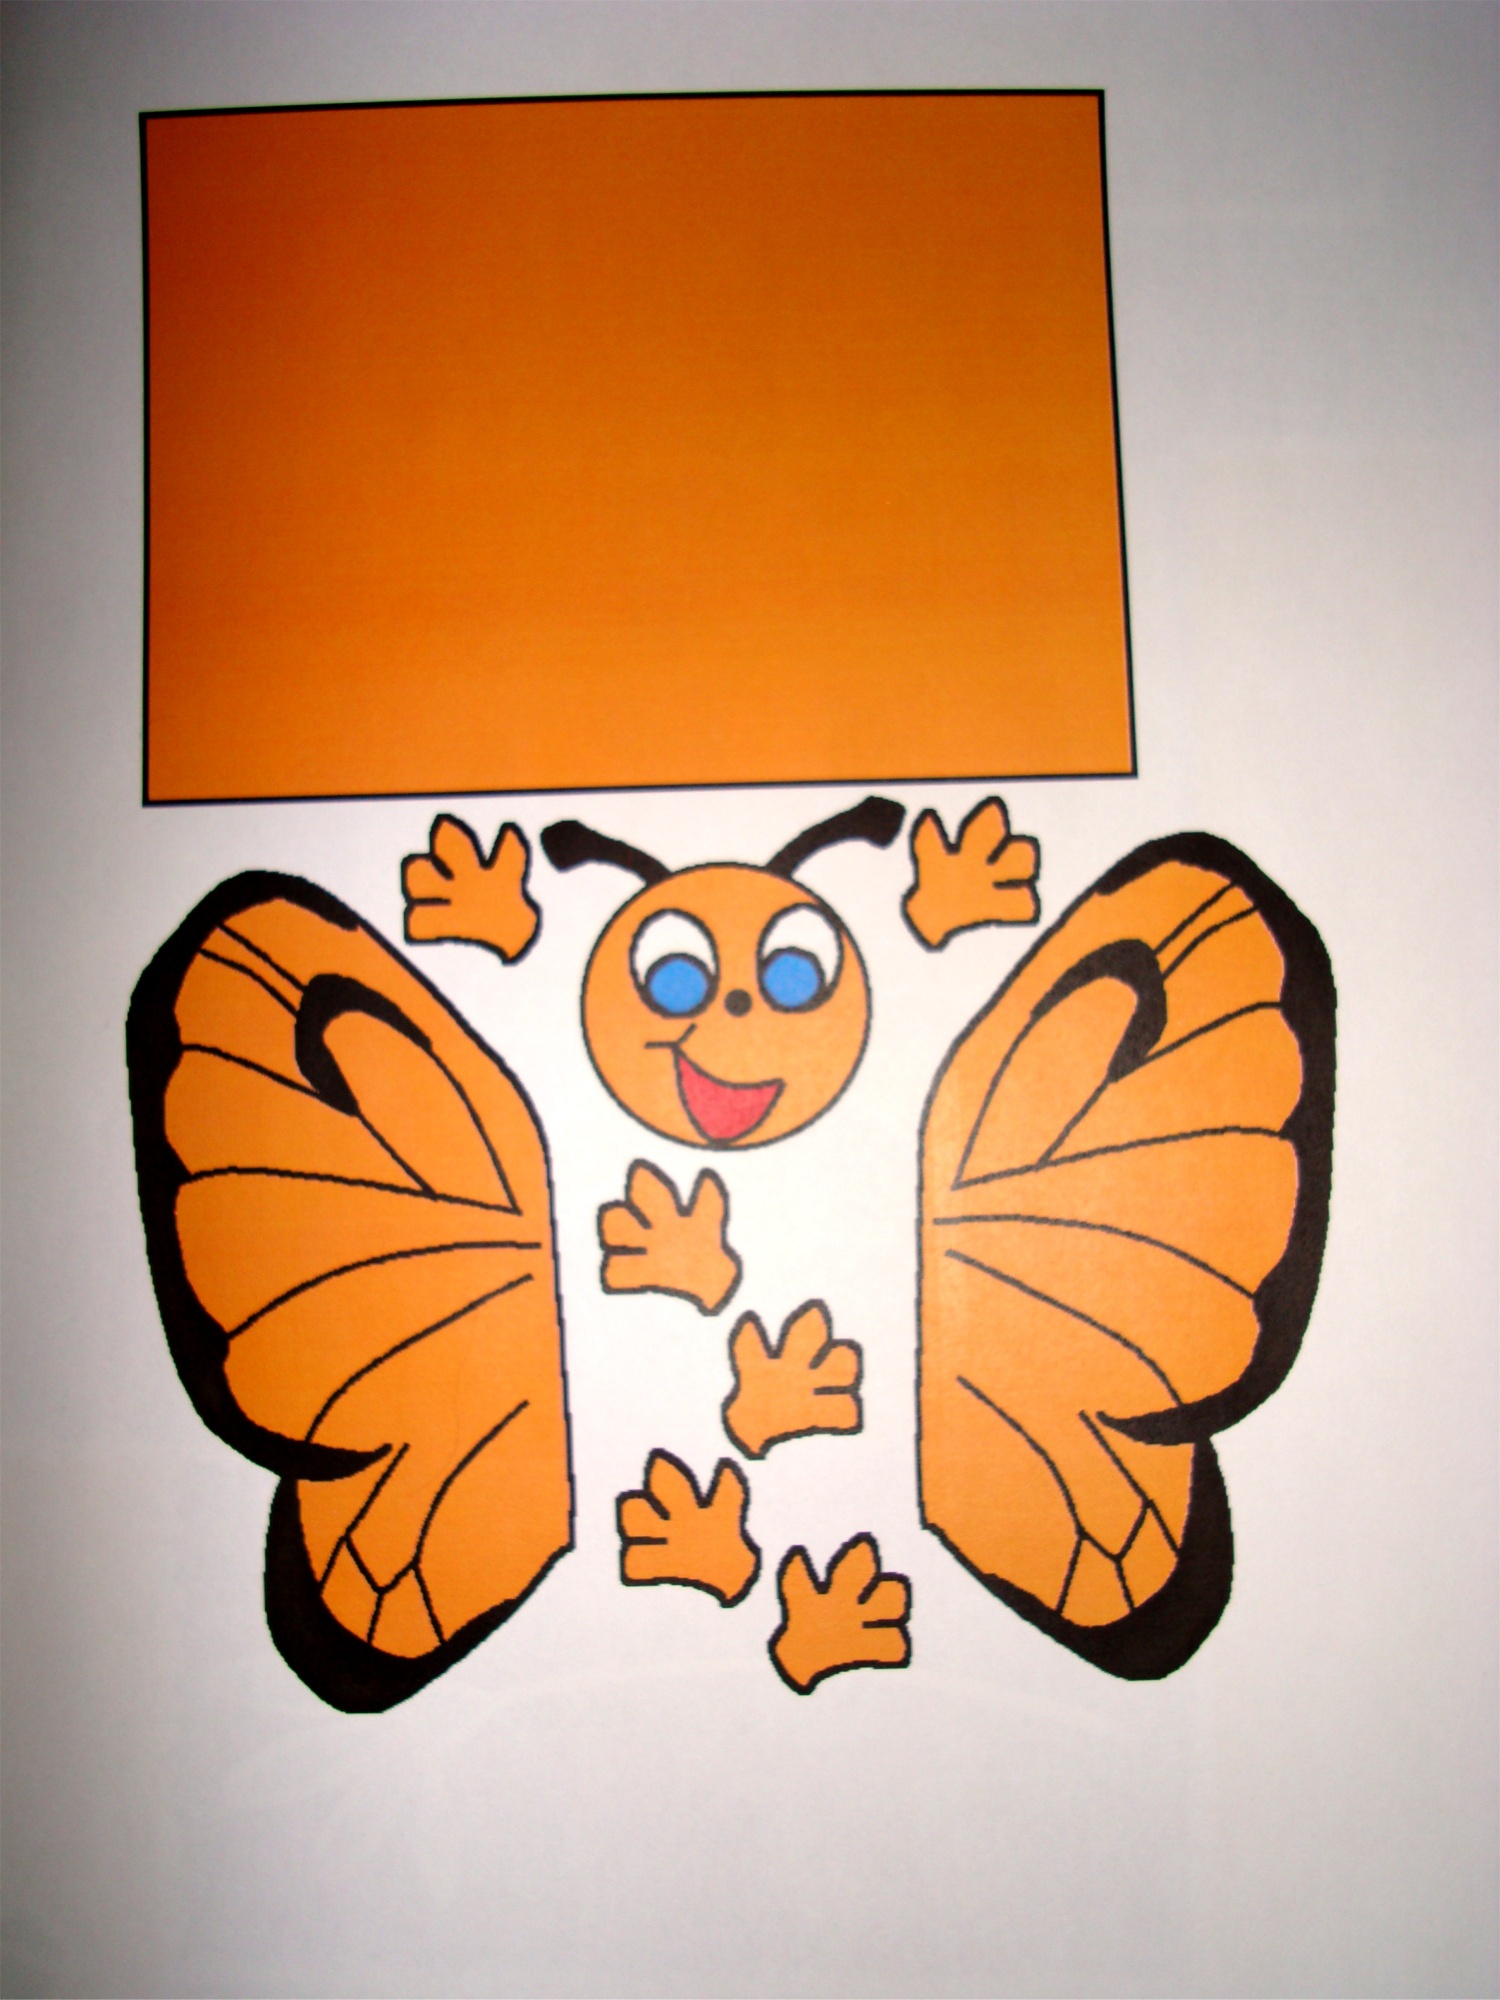 Rouleau De Papier pour Enfants Art,Rouleau de Coloriage pour  Enfants,Rouleau De Papier À Dessin,Bricolage Rouleau De Papier À Dessin